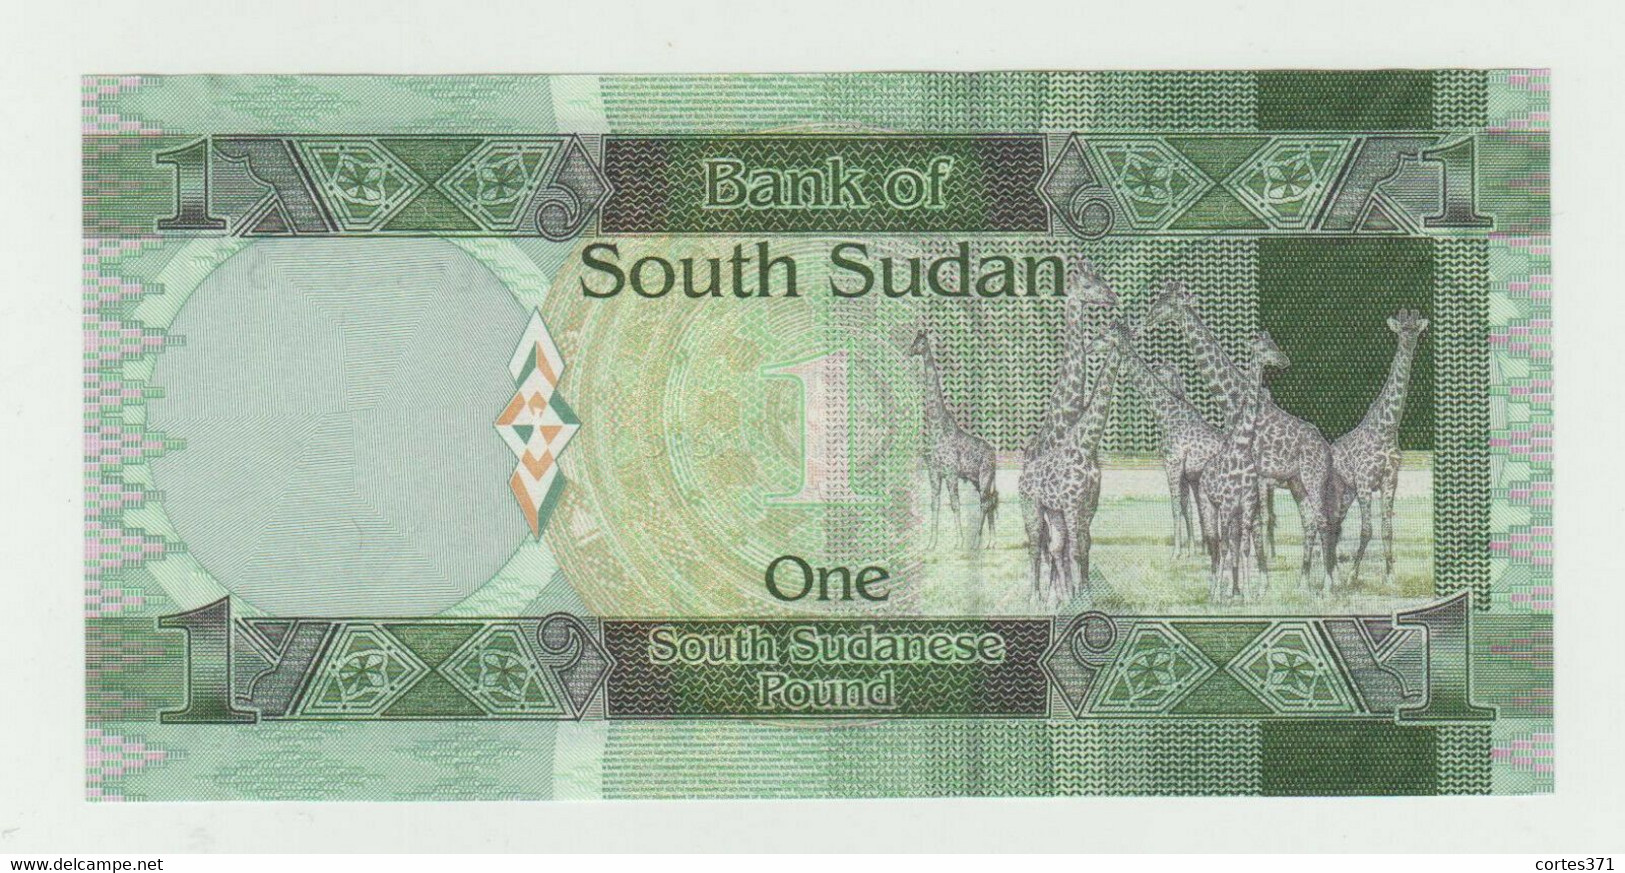 South Sudan 1 Pound 2011 P-5 UNC - Sudan Del Sud